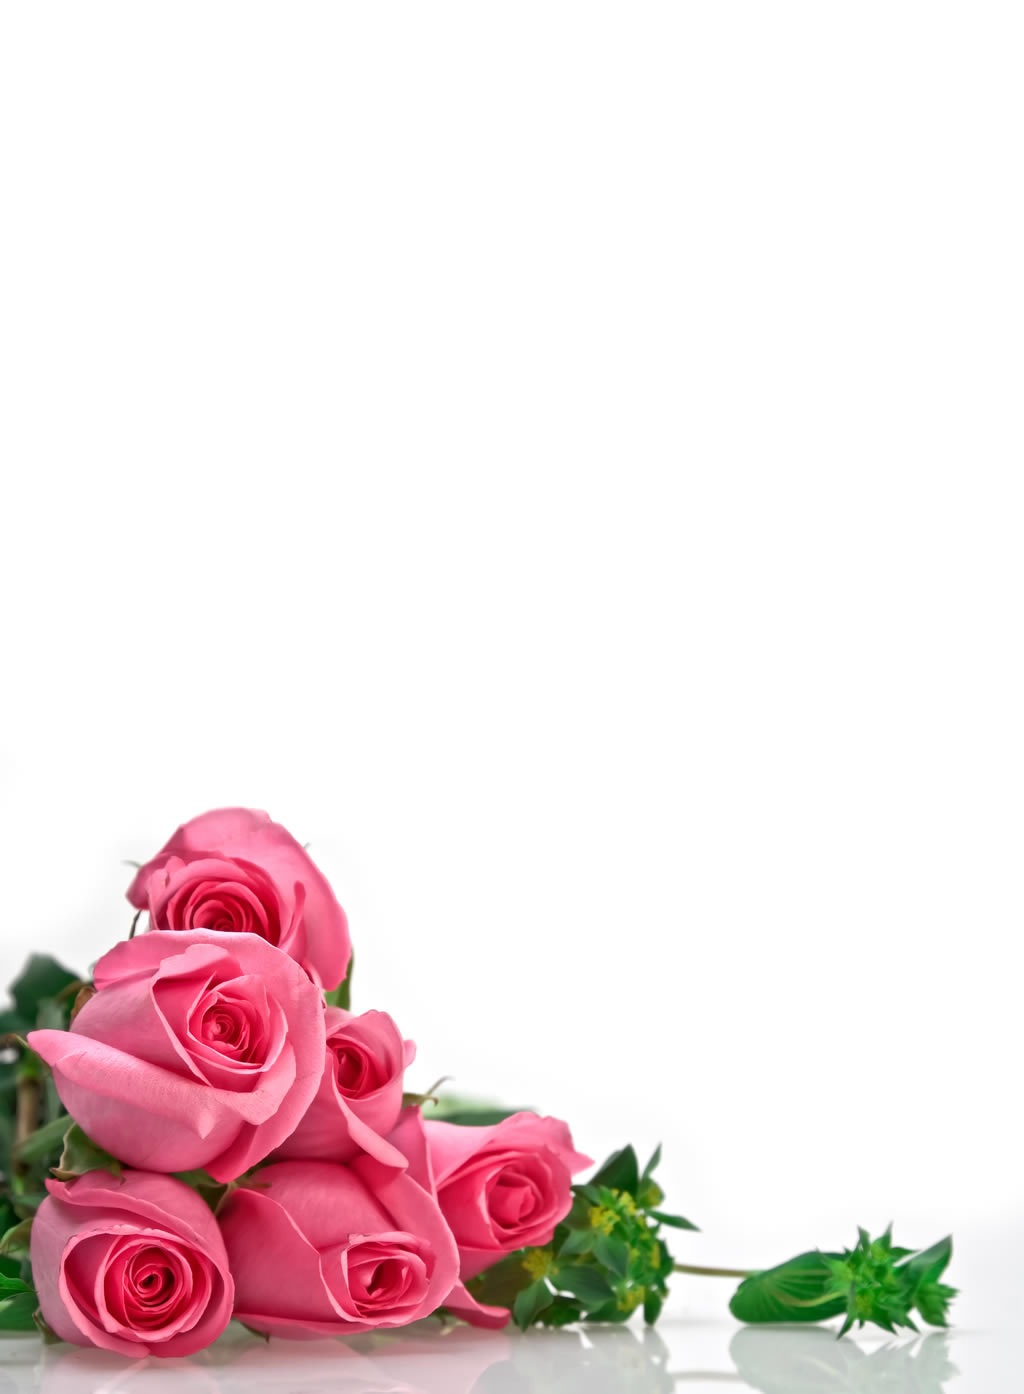 粉红玫瑰花束高清图片